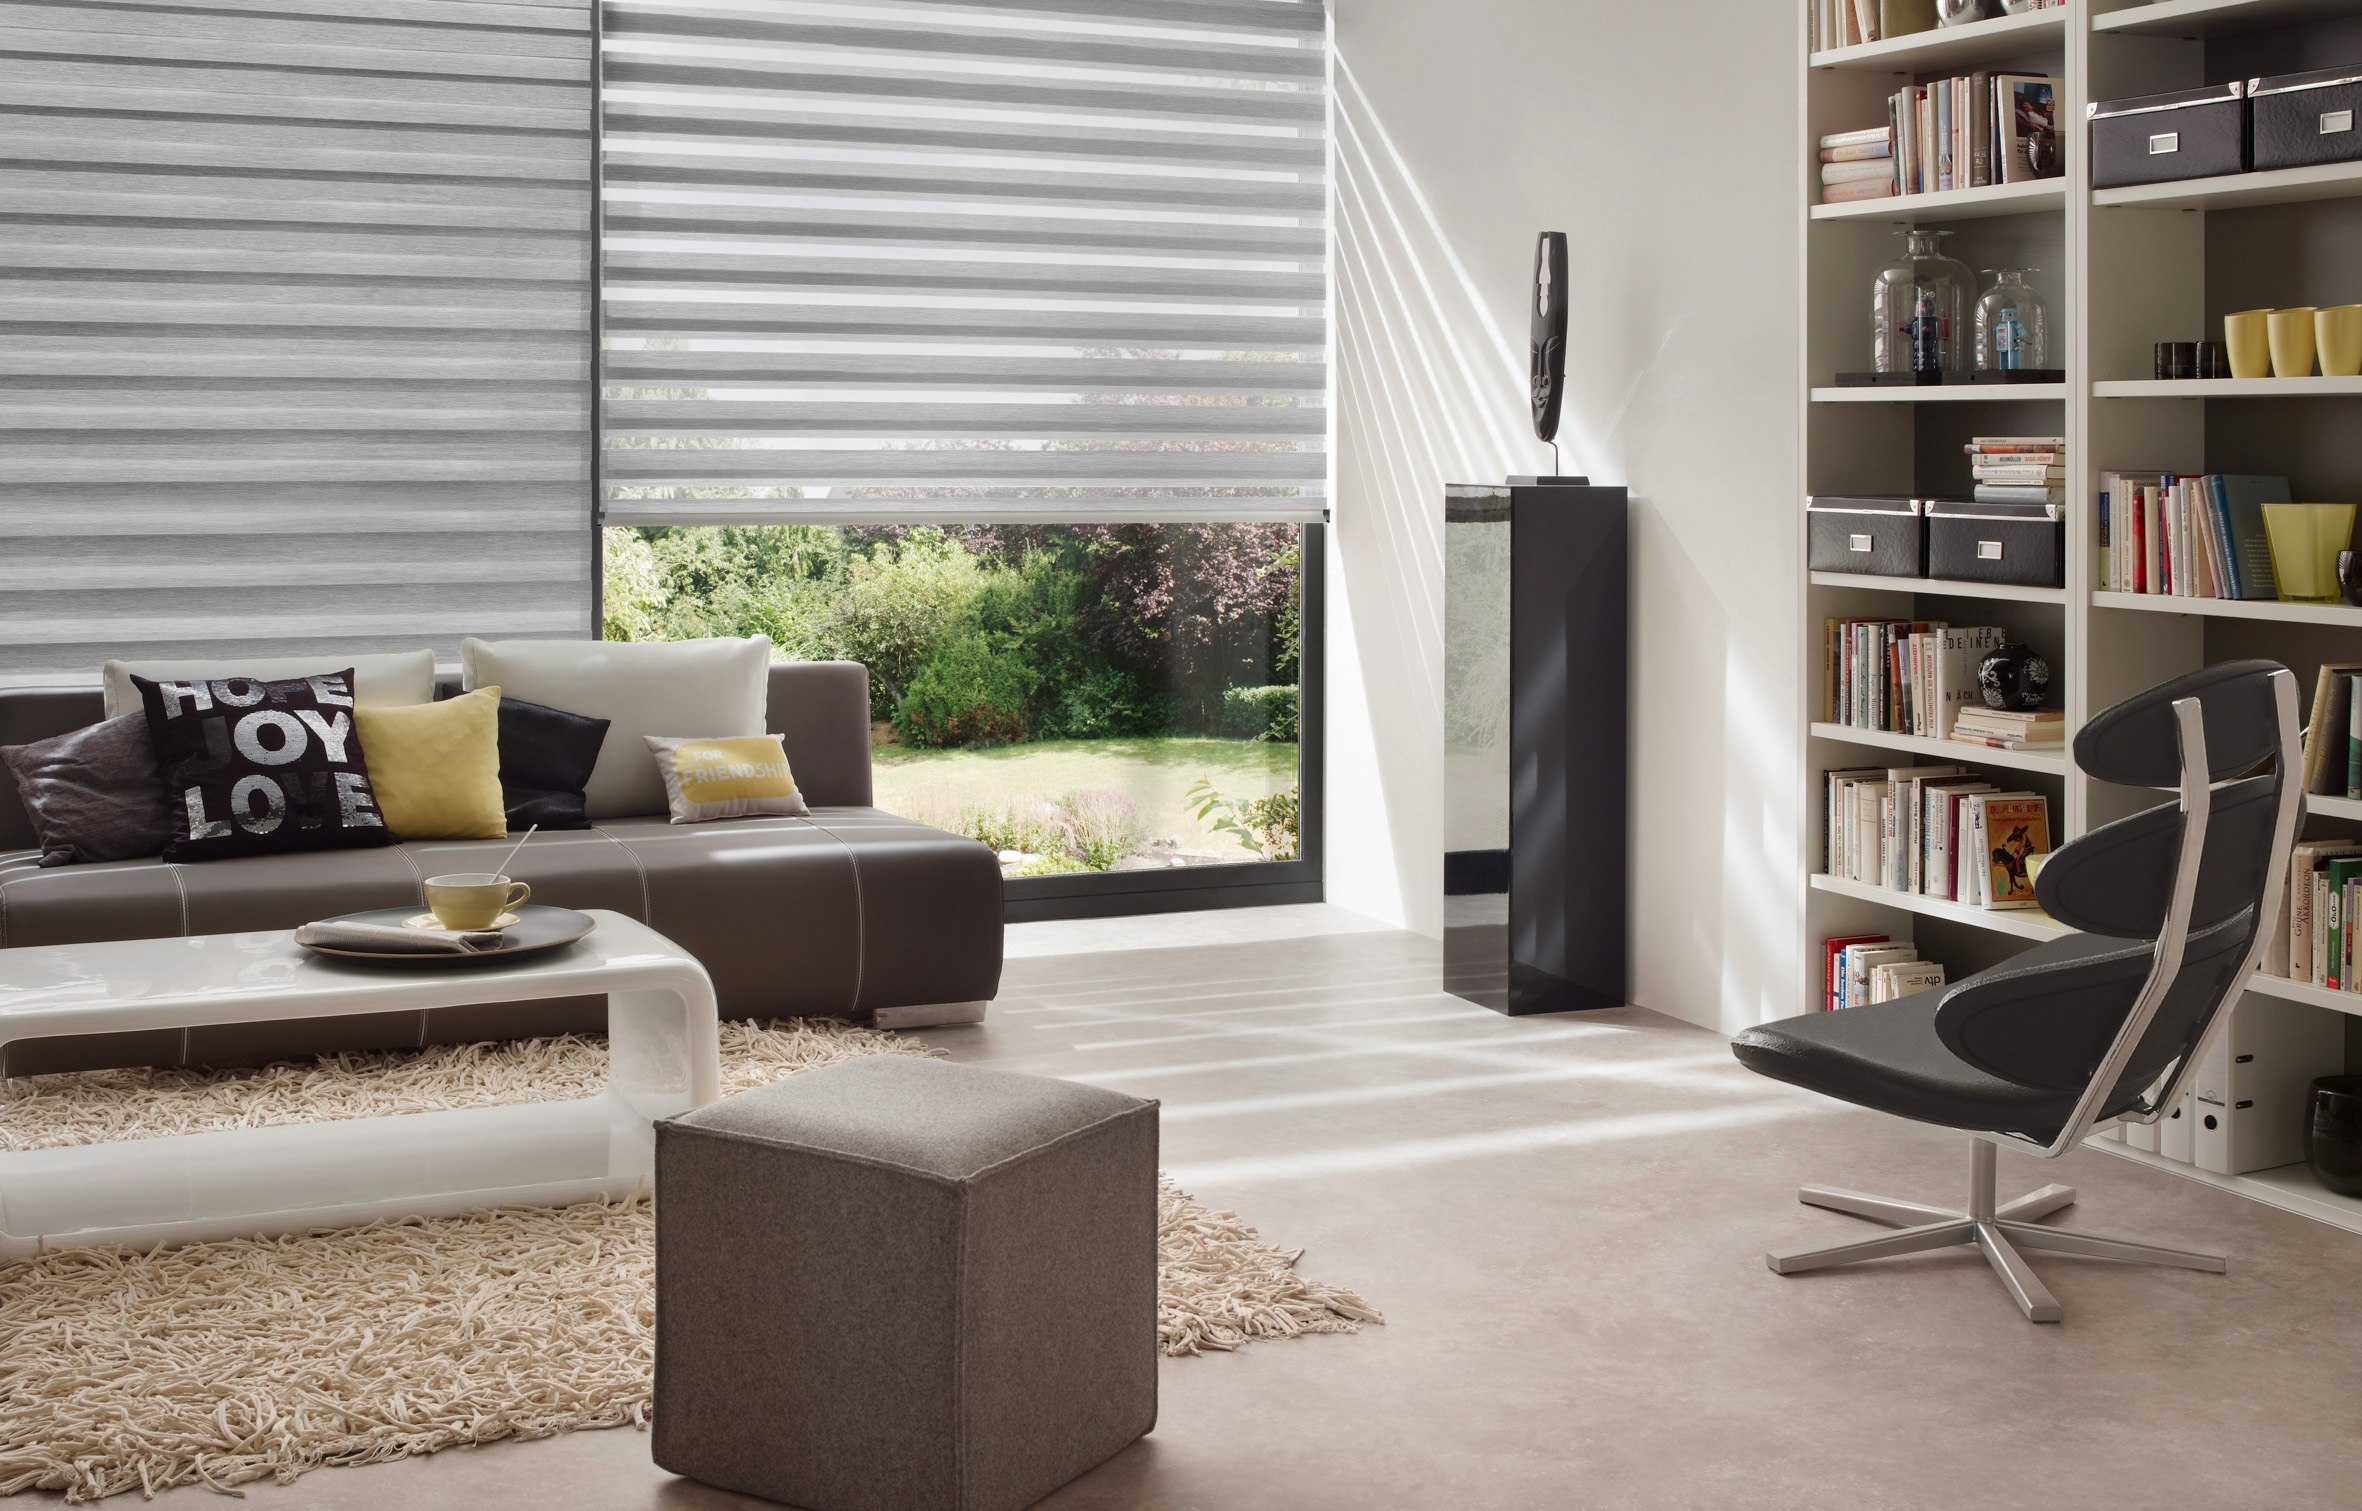 Best blinds for living room